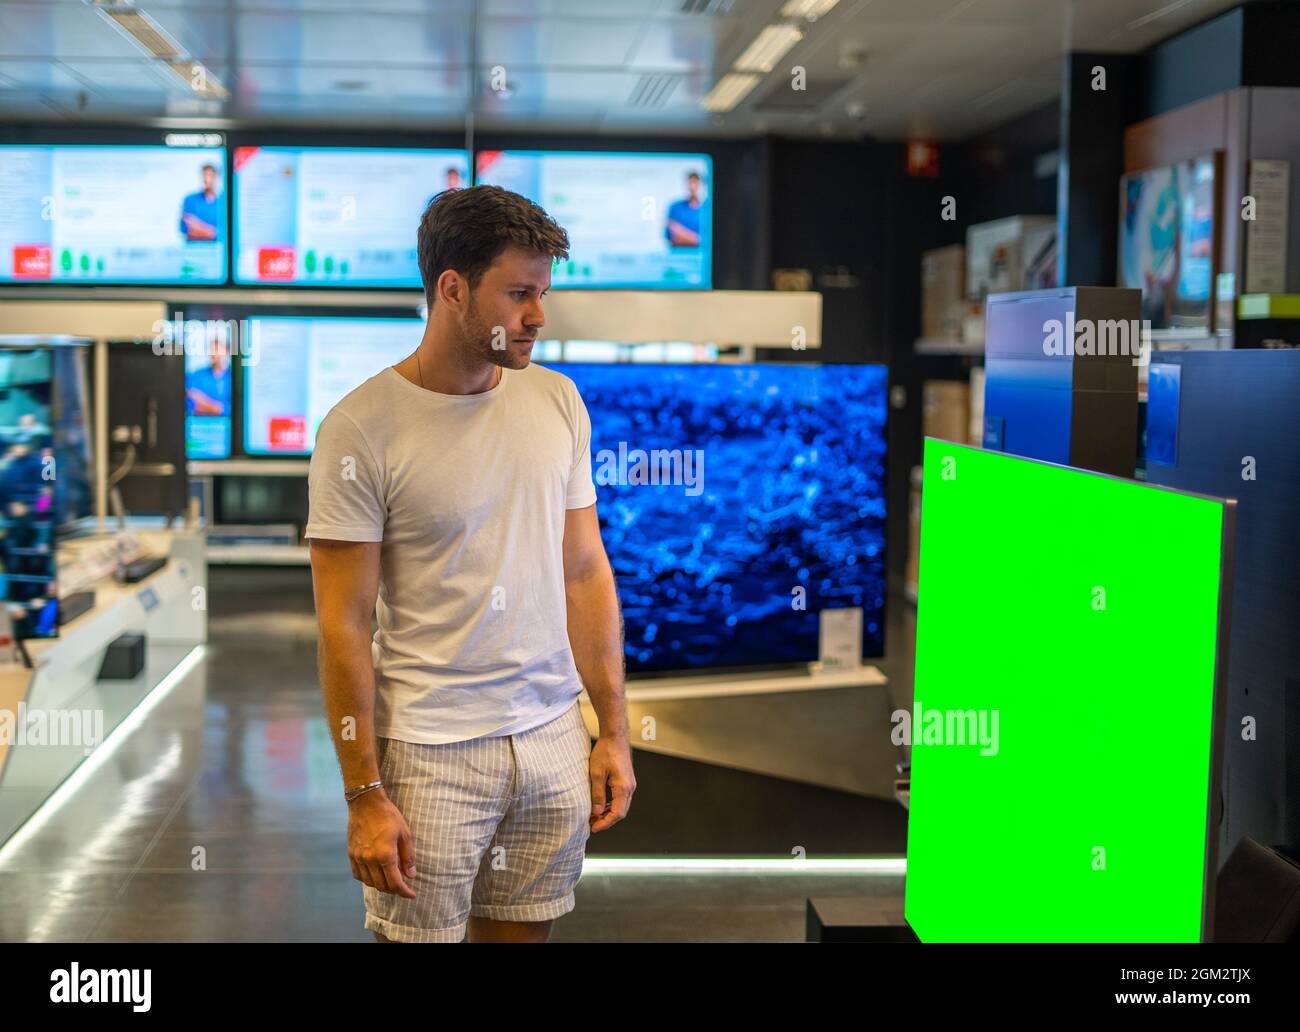 Jeune homme barbu se tenant devant un grand écran plat avec écran couleur verte lors d'une visite d'un magasin d'électronique moderne Banque D'Images